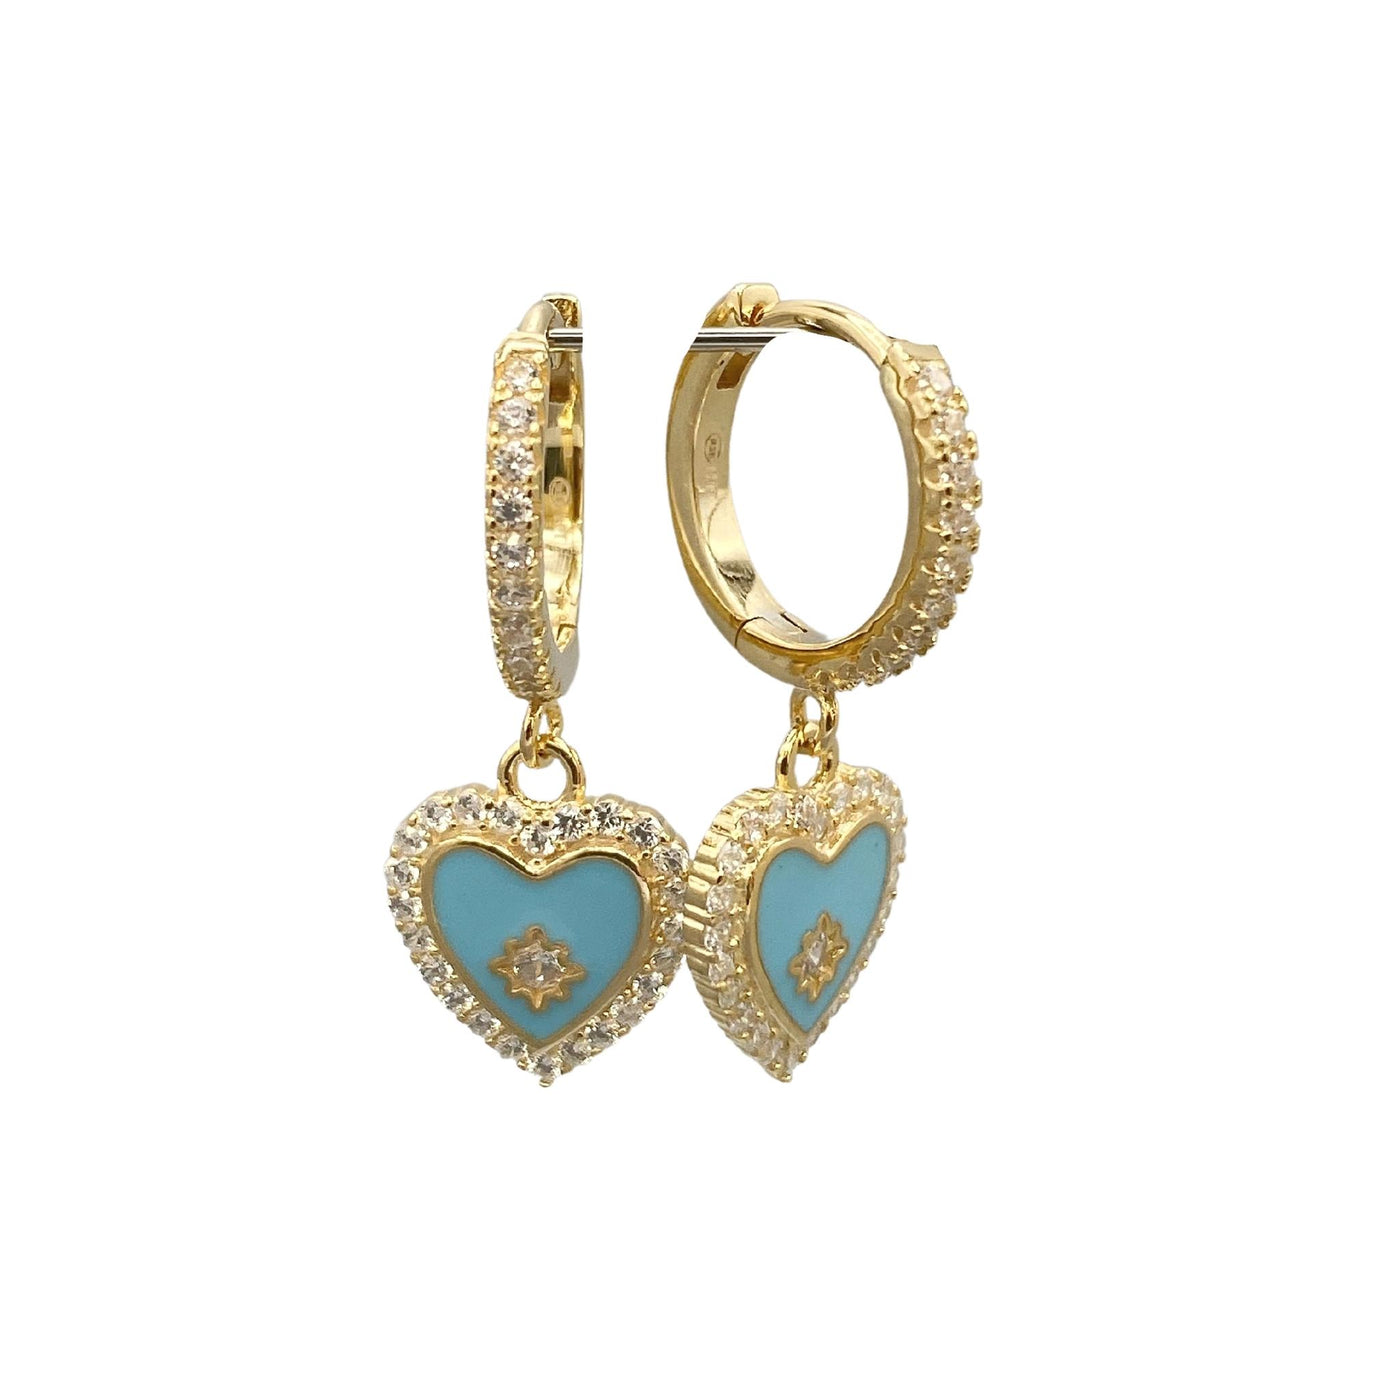 Silver earrings with enamel heart charm